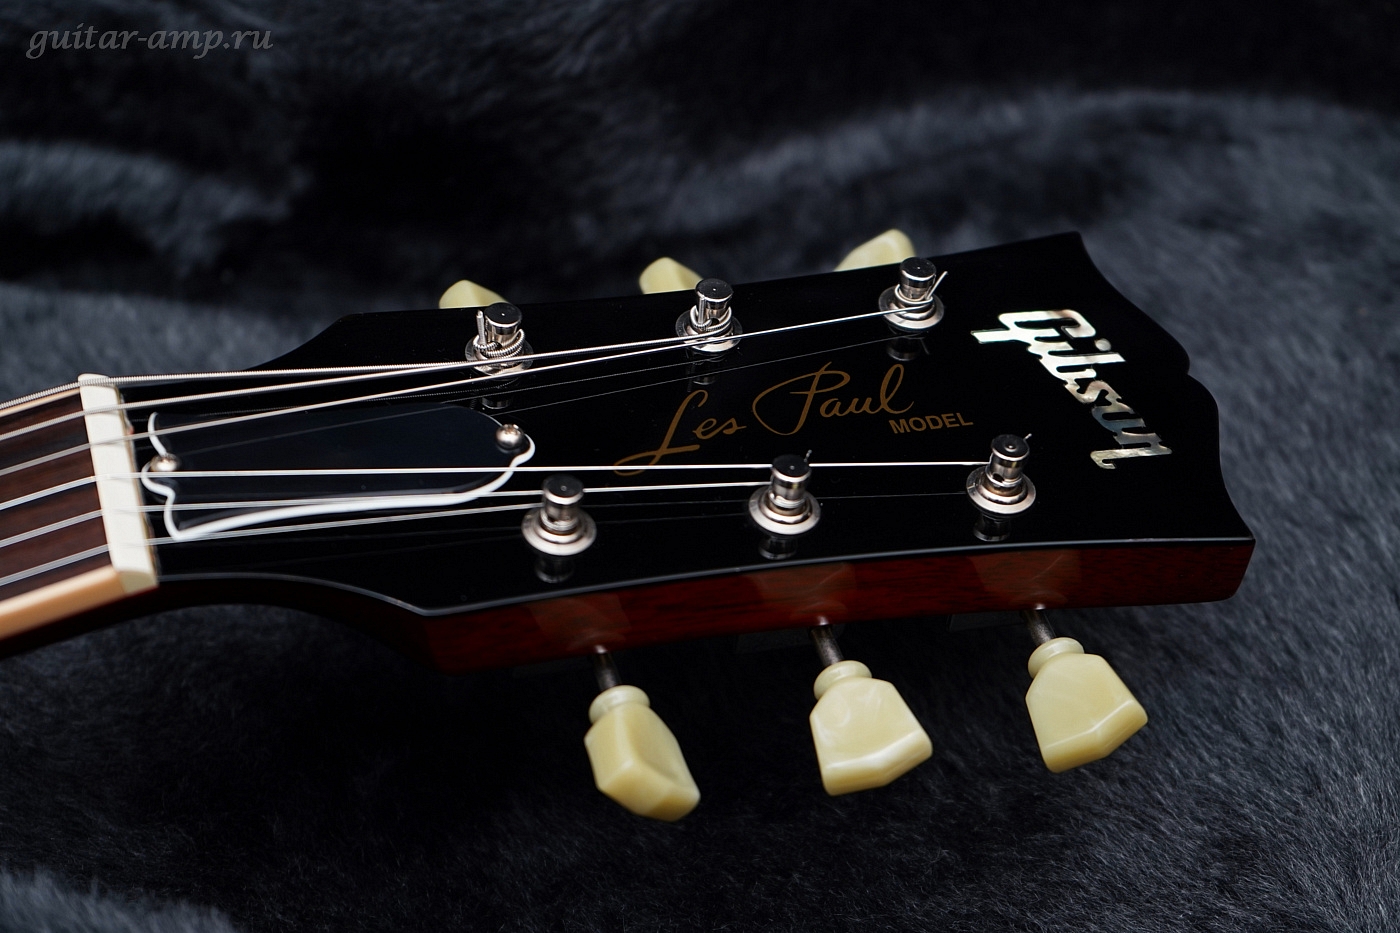 Gibson Les Paul Standard Premium Plus Heritage Cherry Sunburst All Original 2003